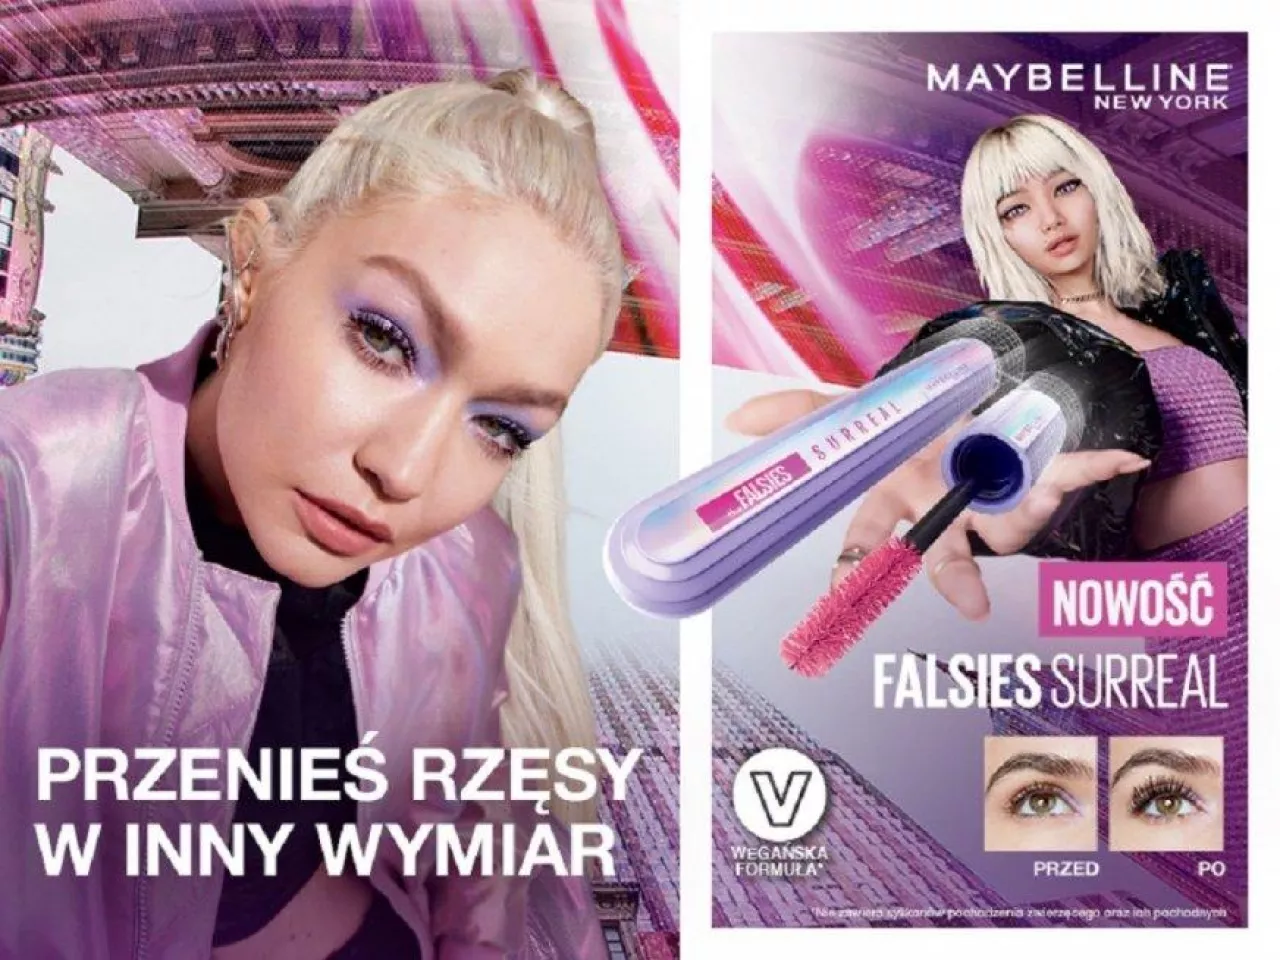 &lt;p&gt;Tusz do rzęs Maybelline promuje Gigi Hadid oraz May – wirtualna ambasadorka marki&lt;/p&gt;